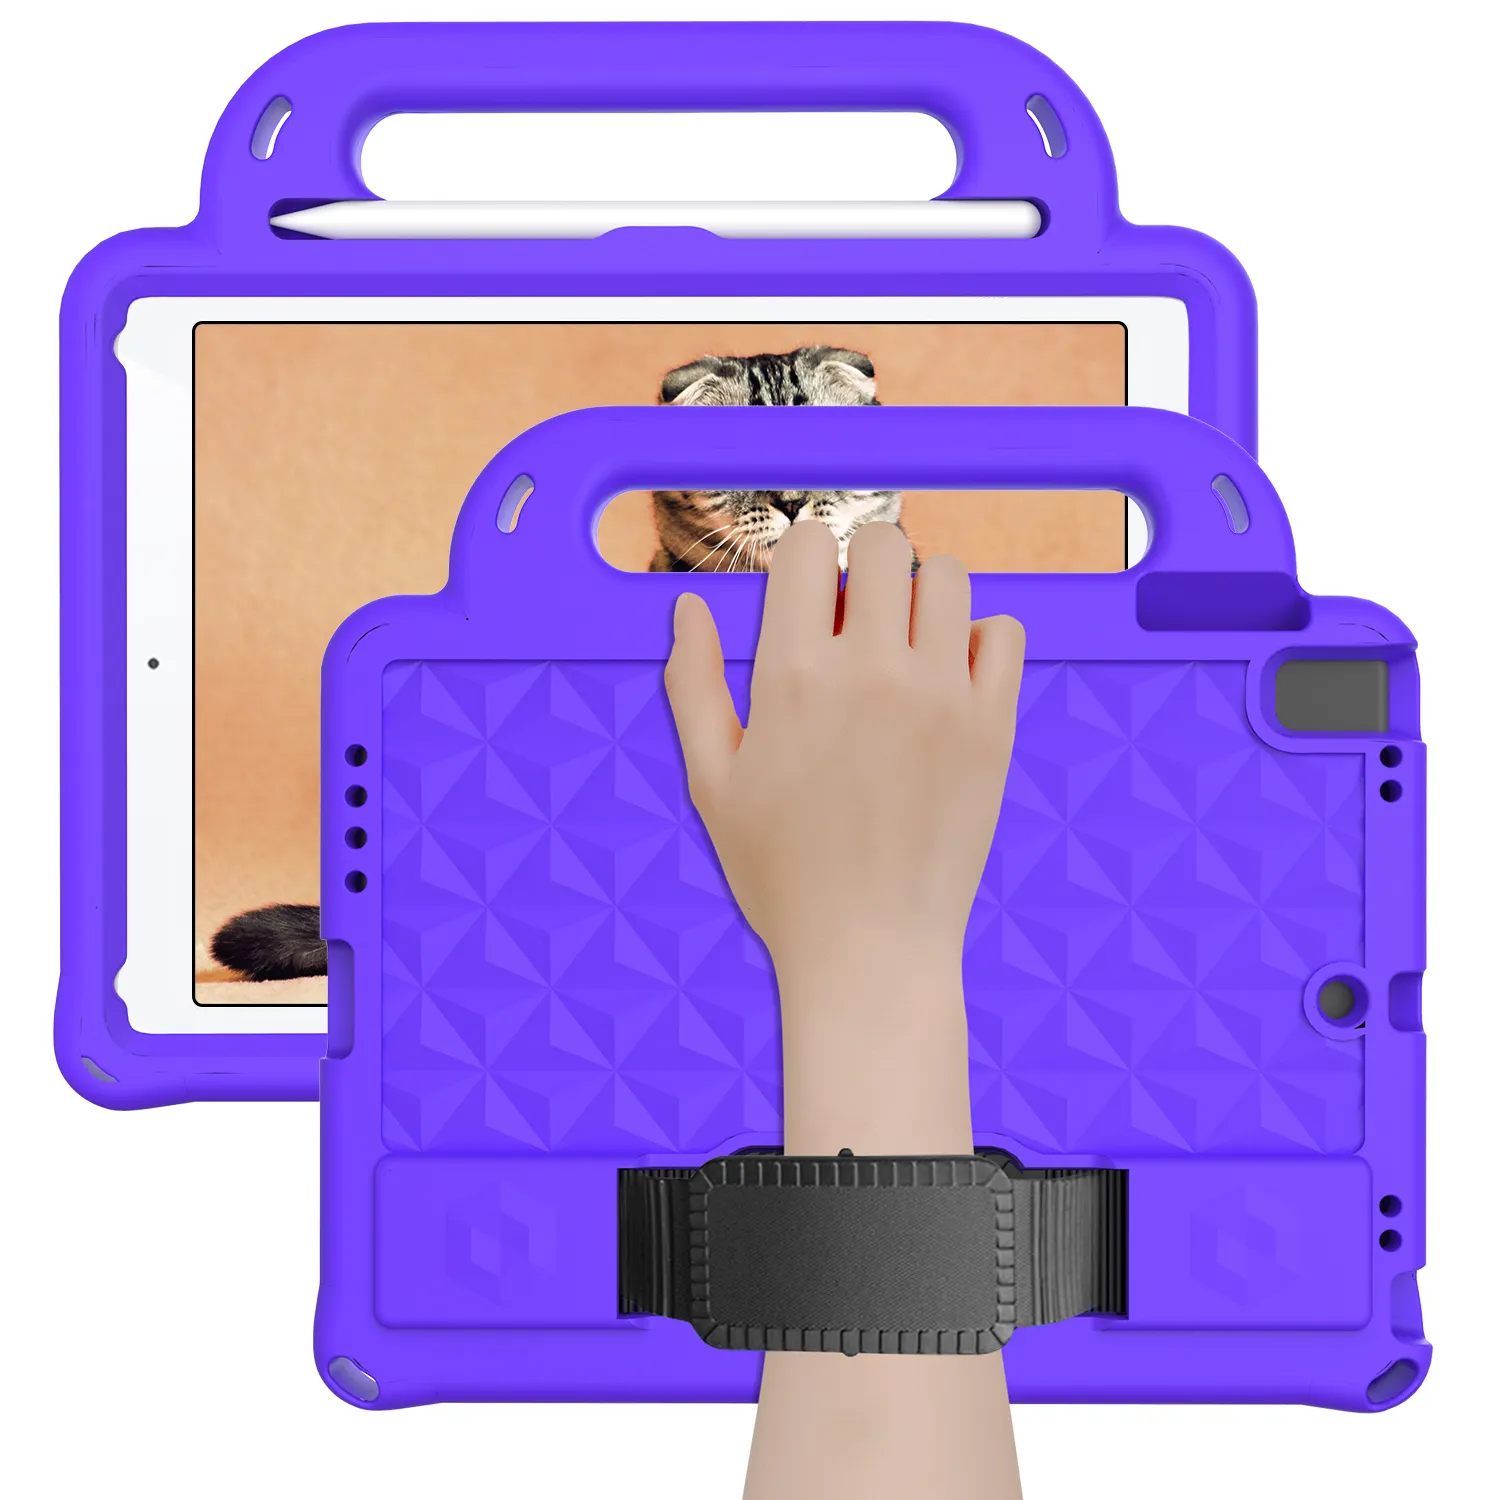 การ์ตูนกันกระแทกกรณีแท็บเล็ตเด็กที่เป็นมิตรหนา EVA แท็บเล็ตปกกรณีสำหรับ Ipad Air1/2 /Pro/new iPad 9.7นิ้ว